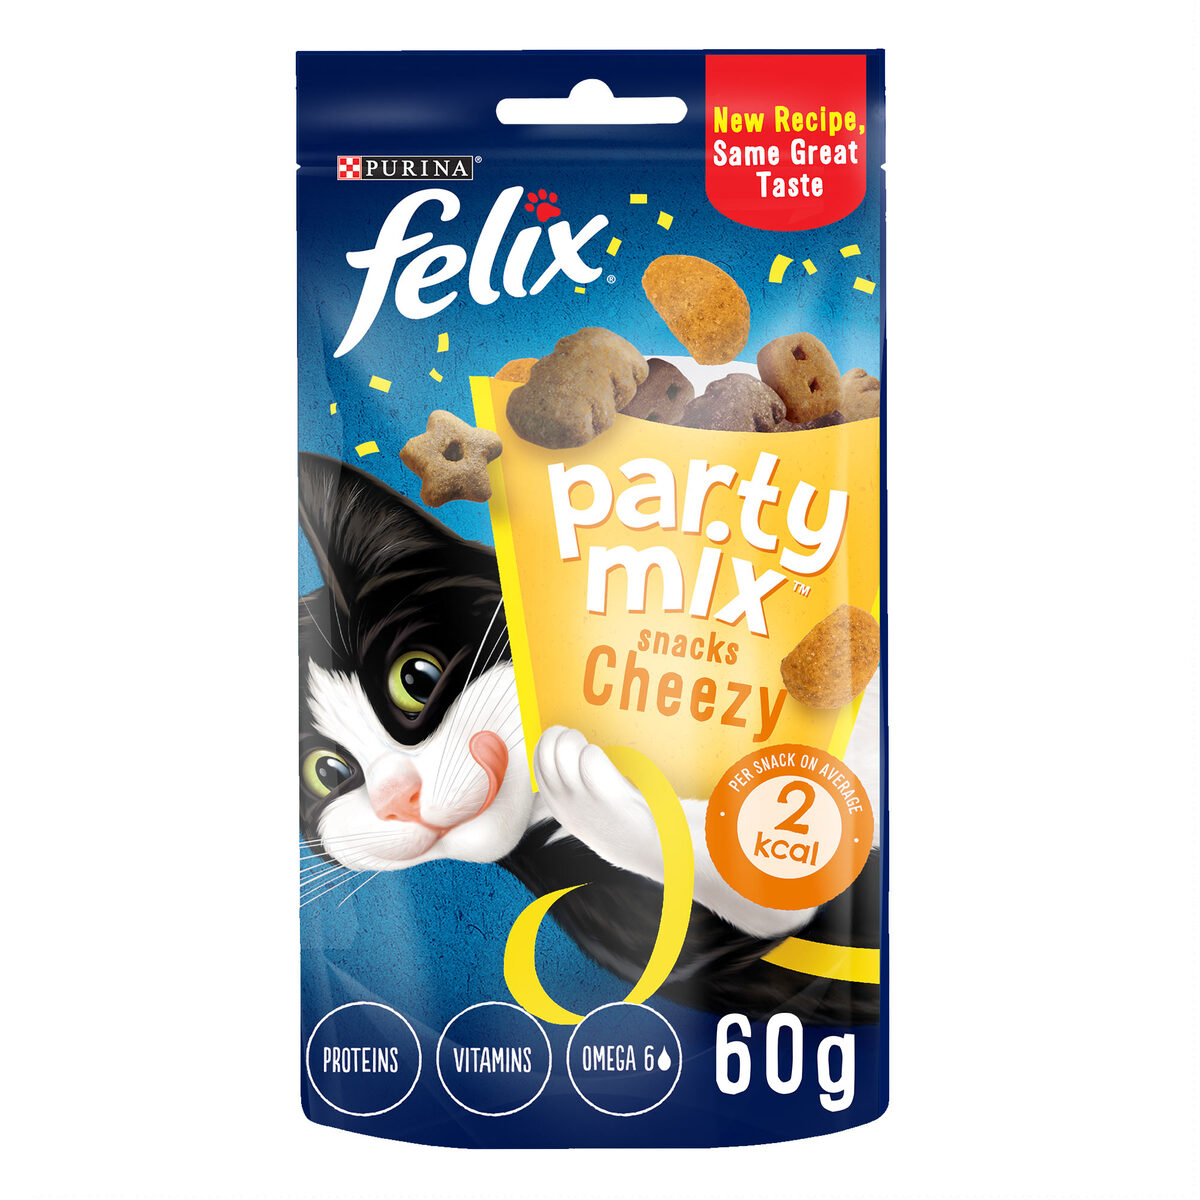 Purina Felix Party Mix Cheezy Mix 60 g